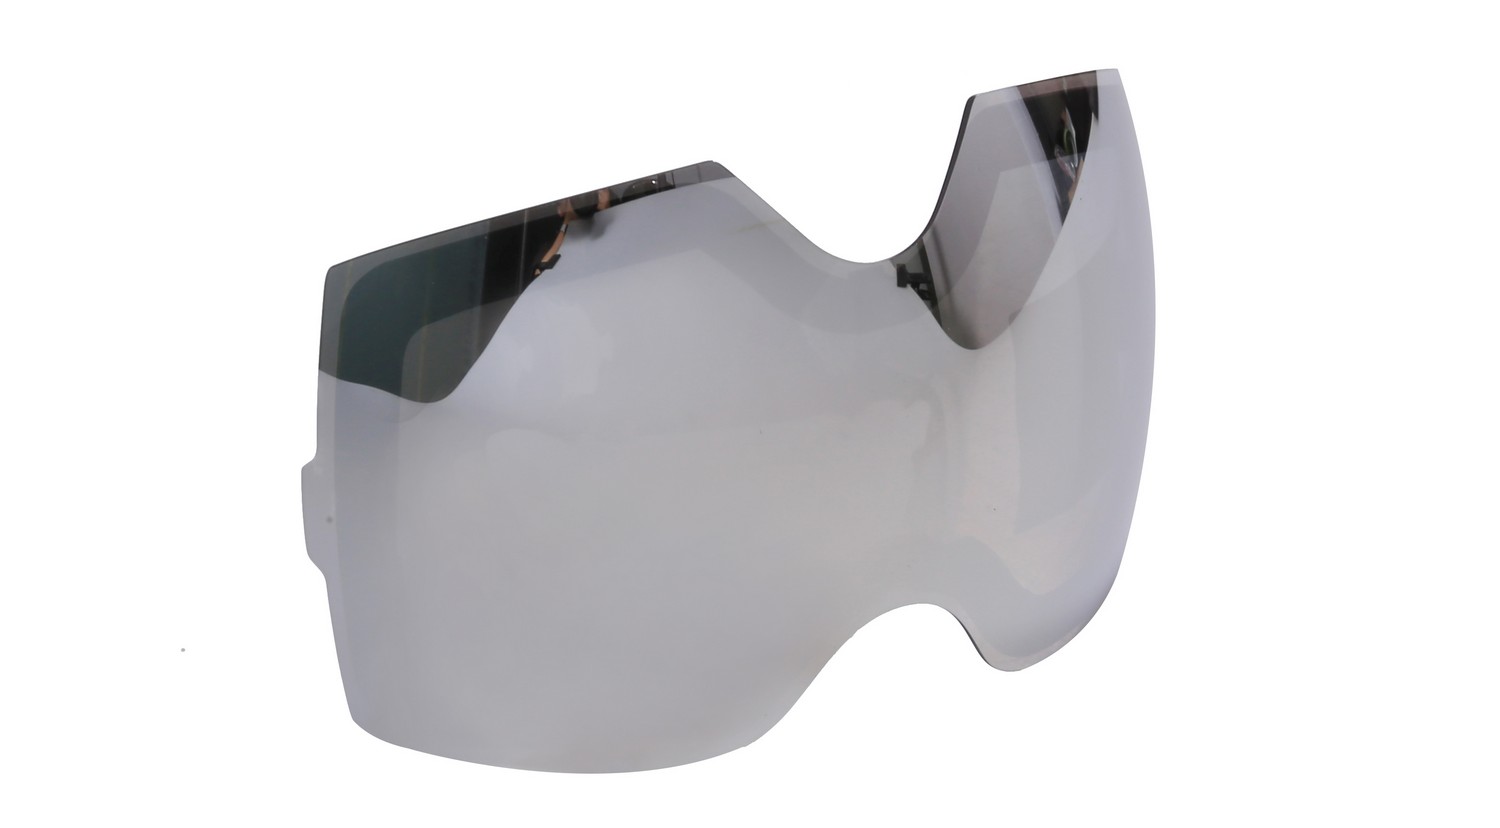 Erstatningssølvglass for skibriller